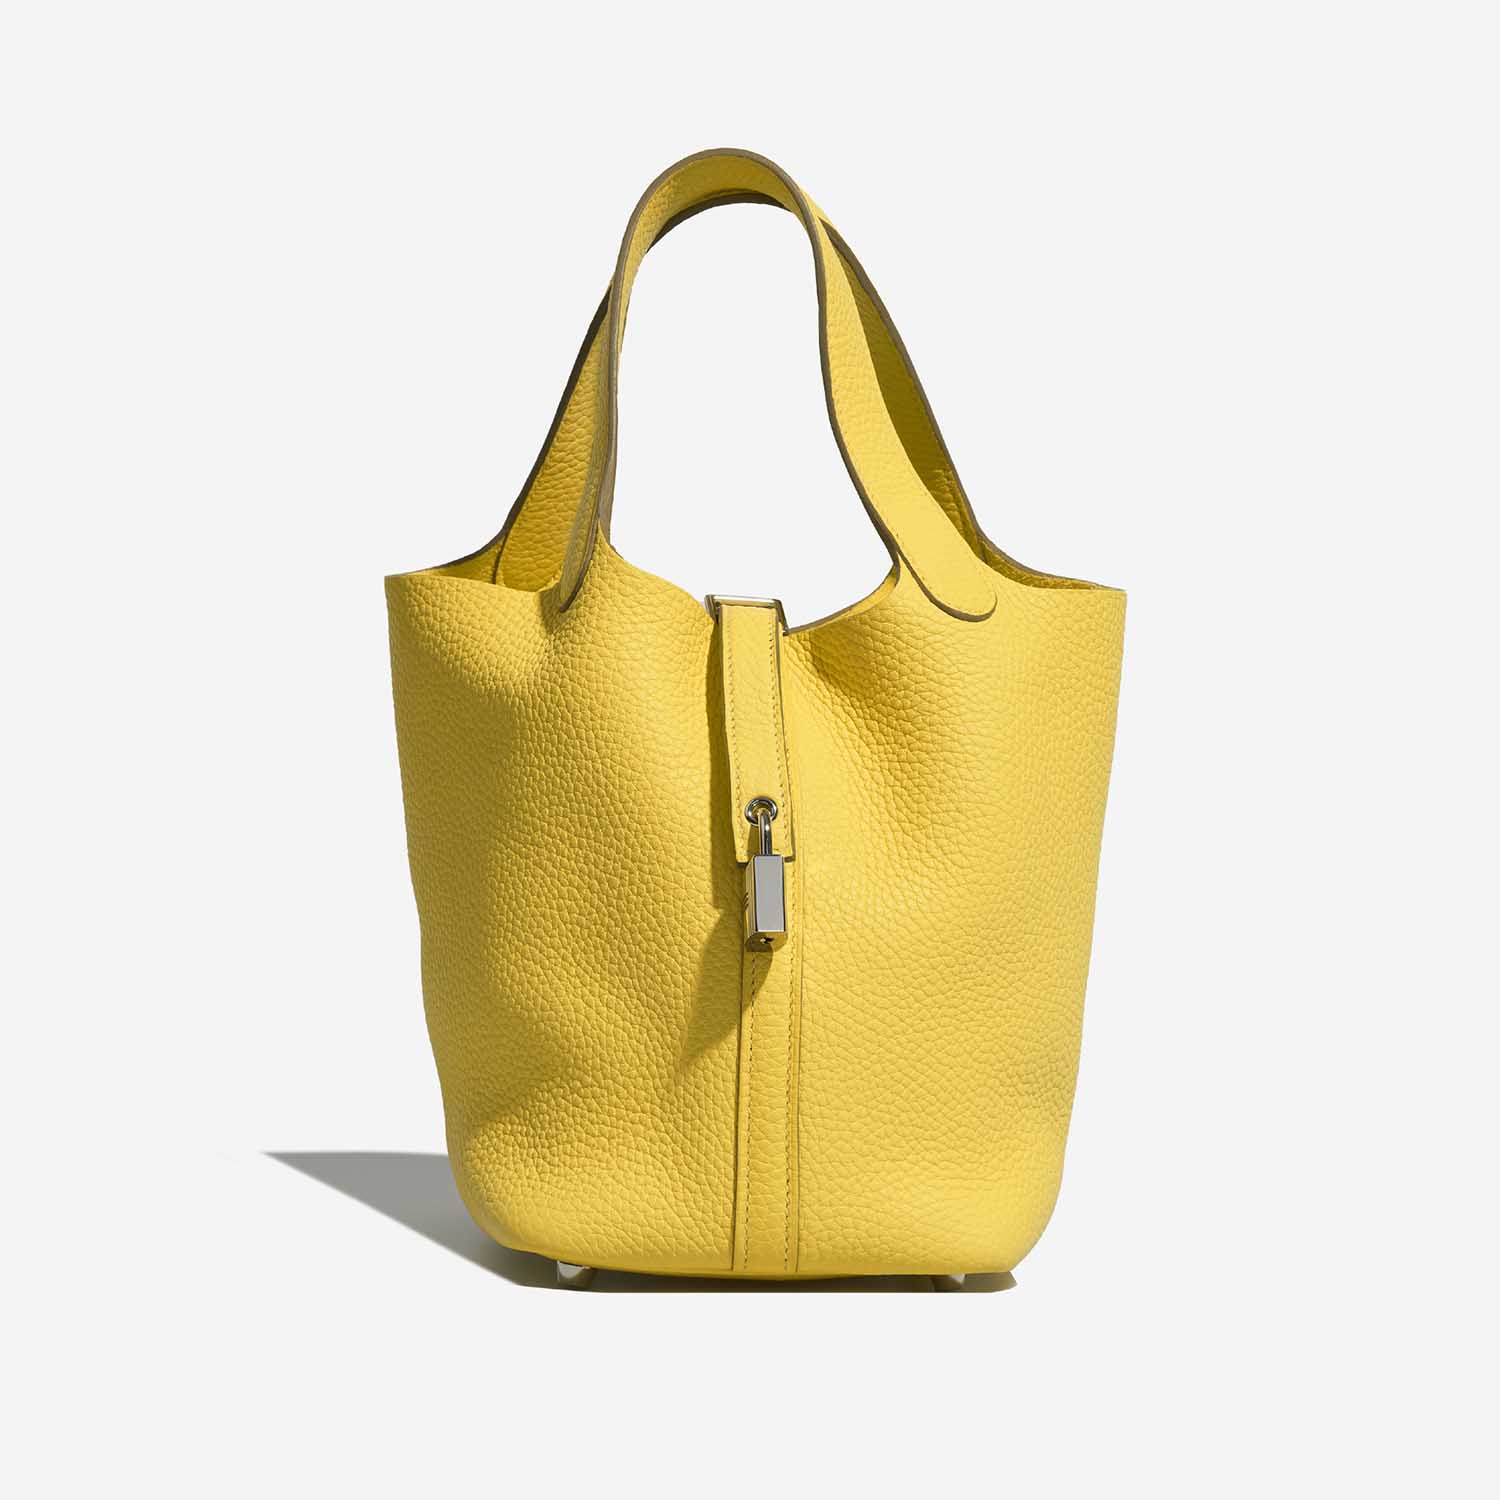 Hermès Picotin 18 Lime Front | Verkaufen Sie Ihre Designer-Tasche auf Saclab.com